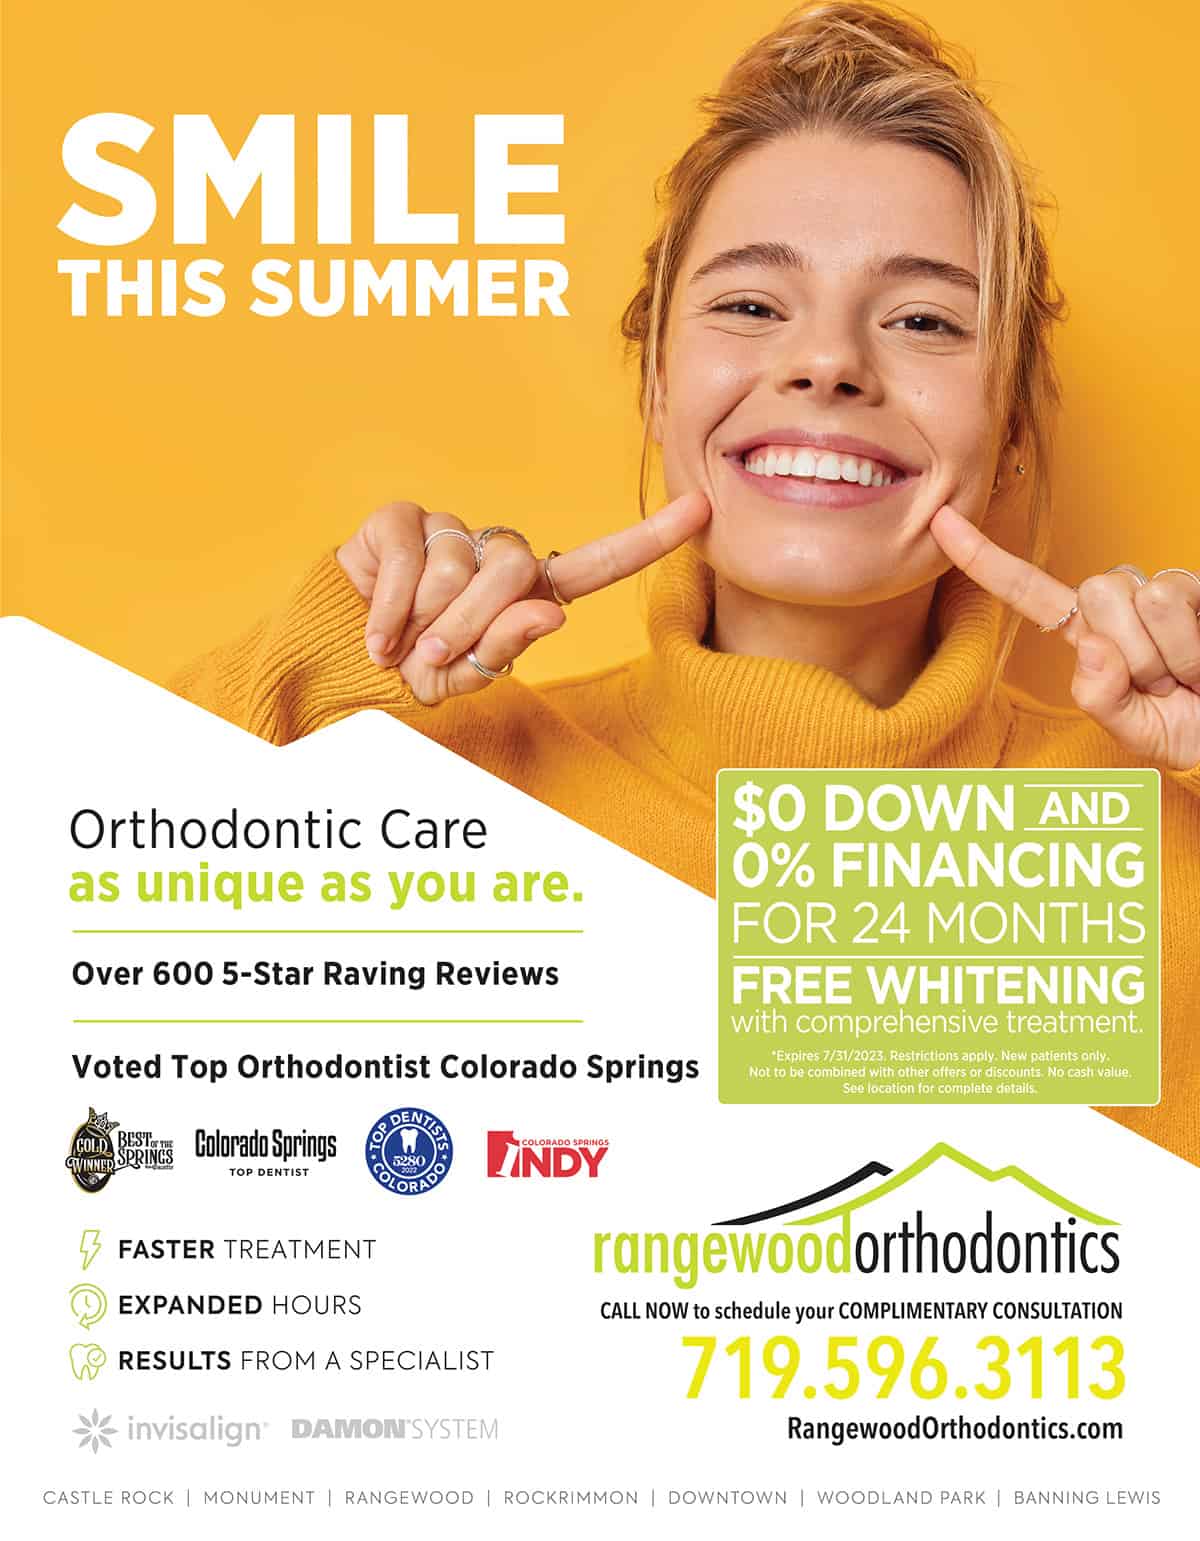 Rangewood Orthodontics